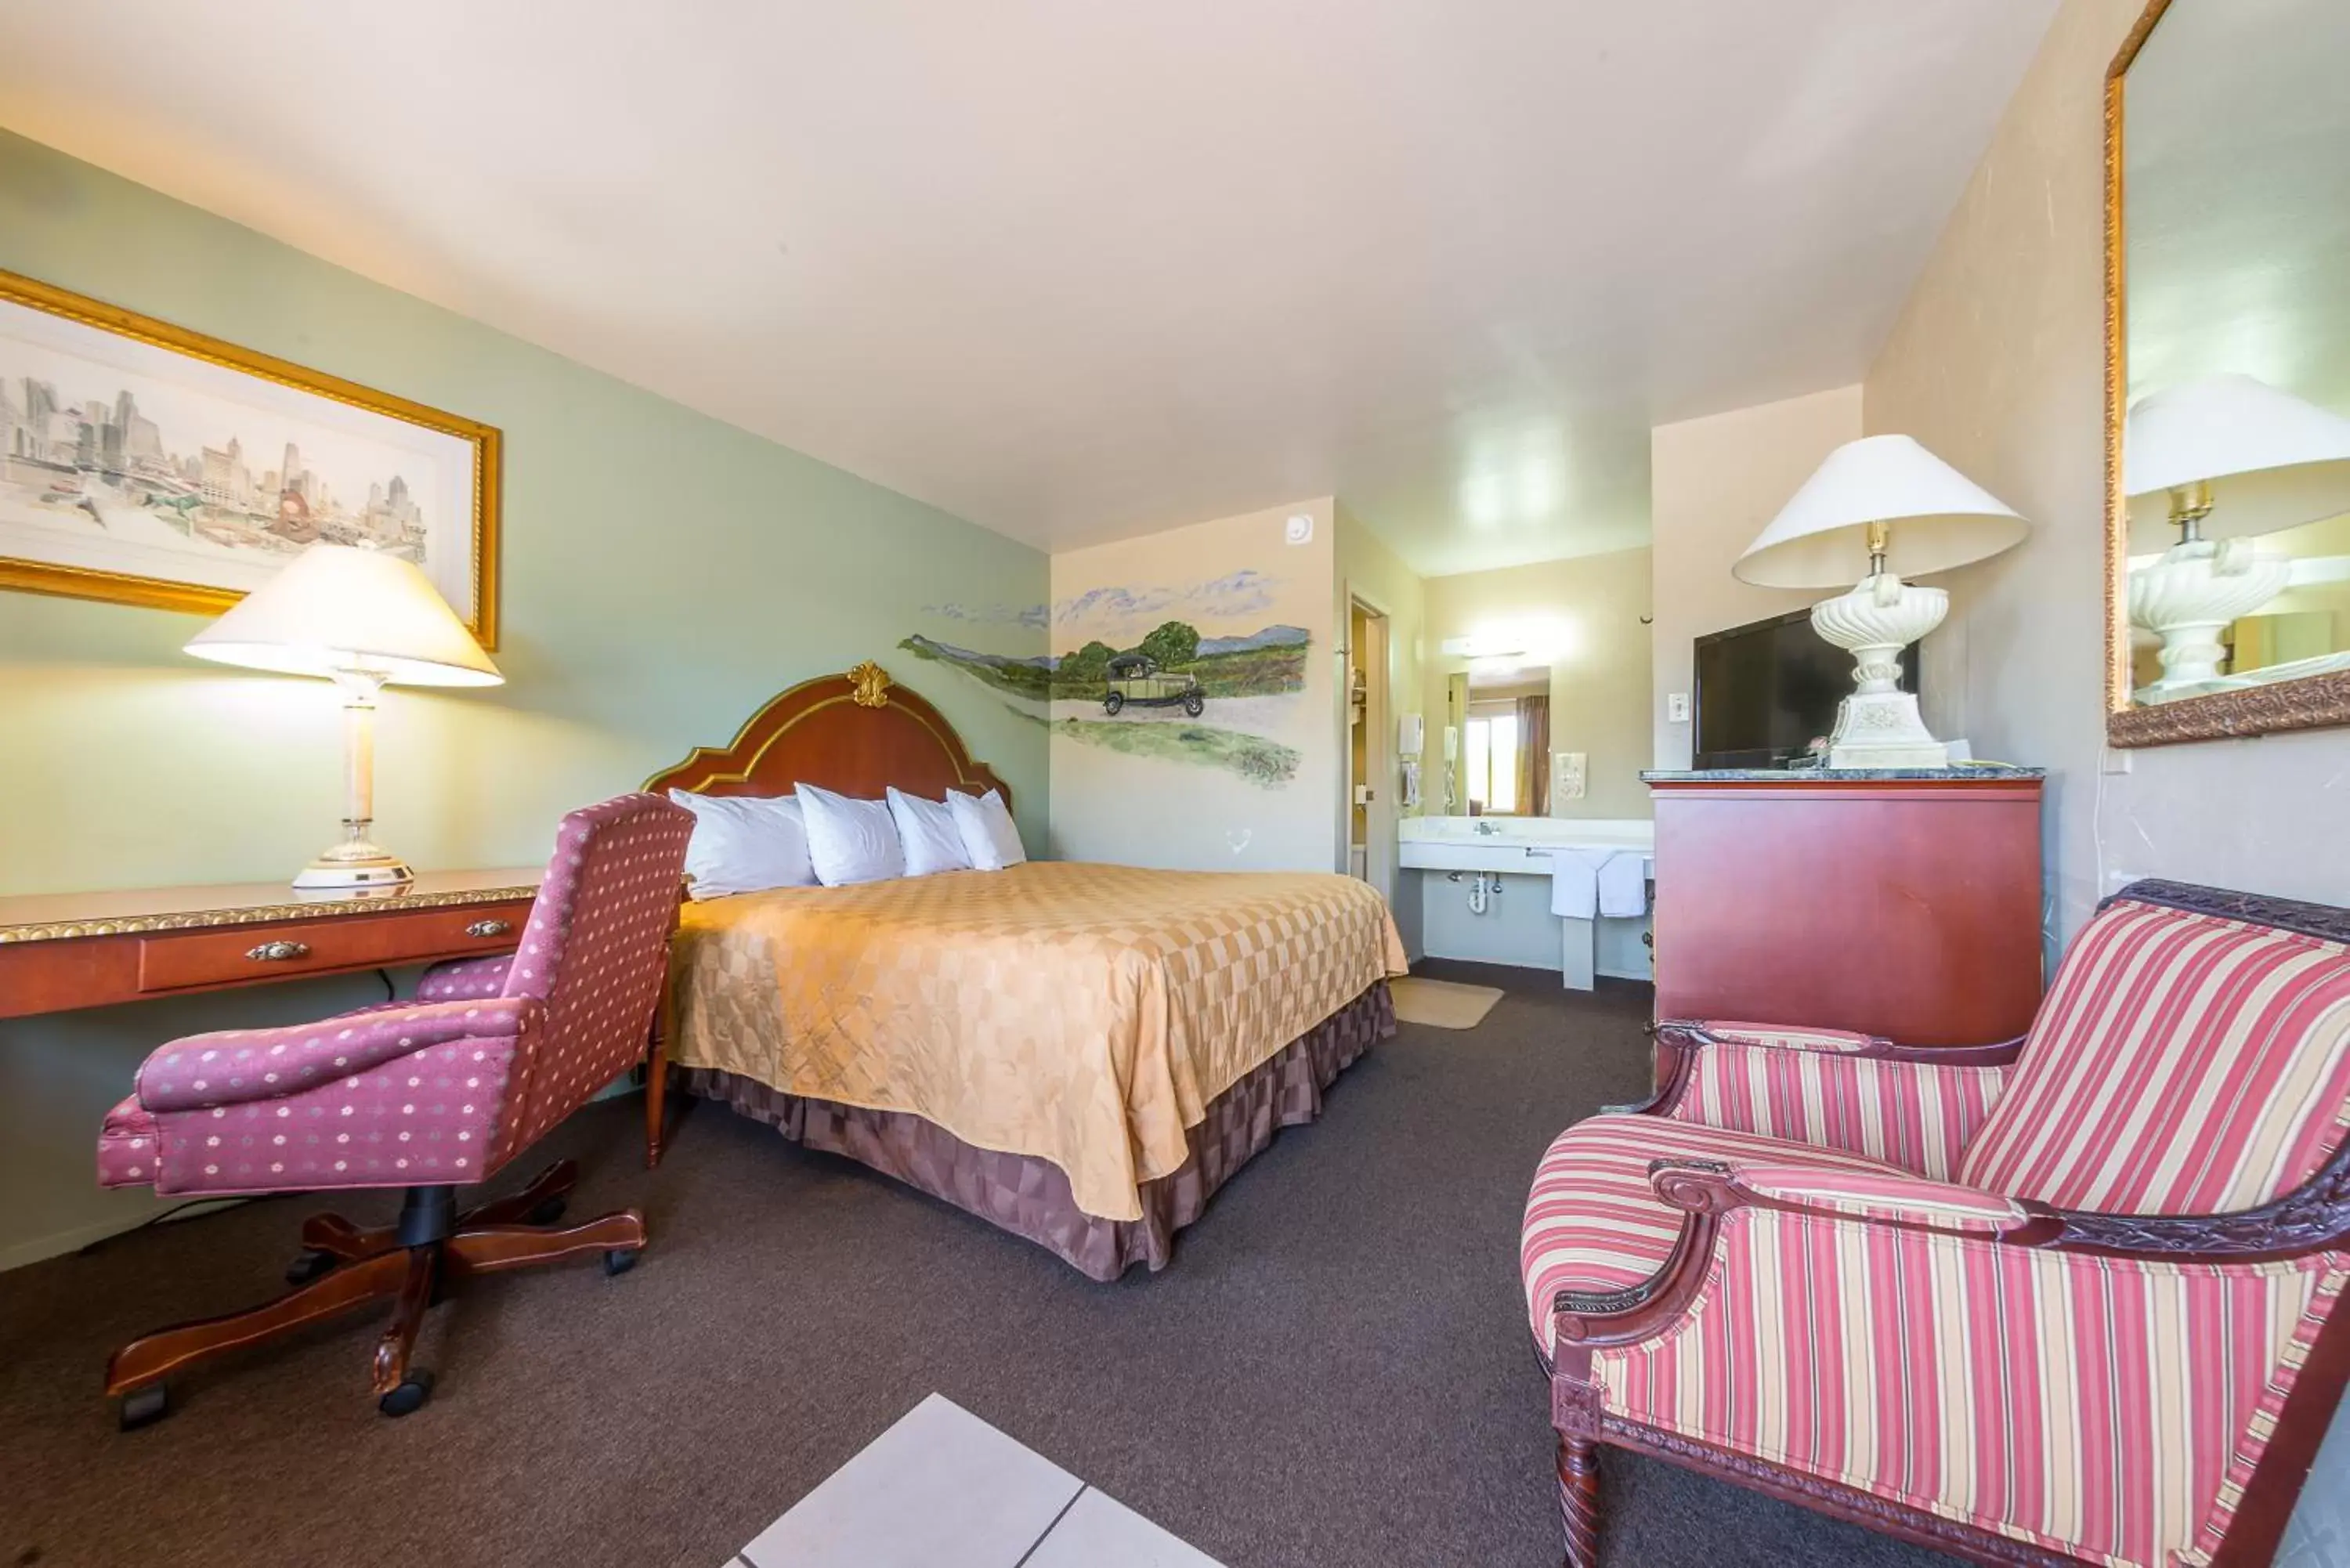 Bedroom in Americas Best Value Inn - Legend's Inn